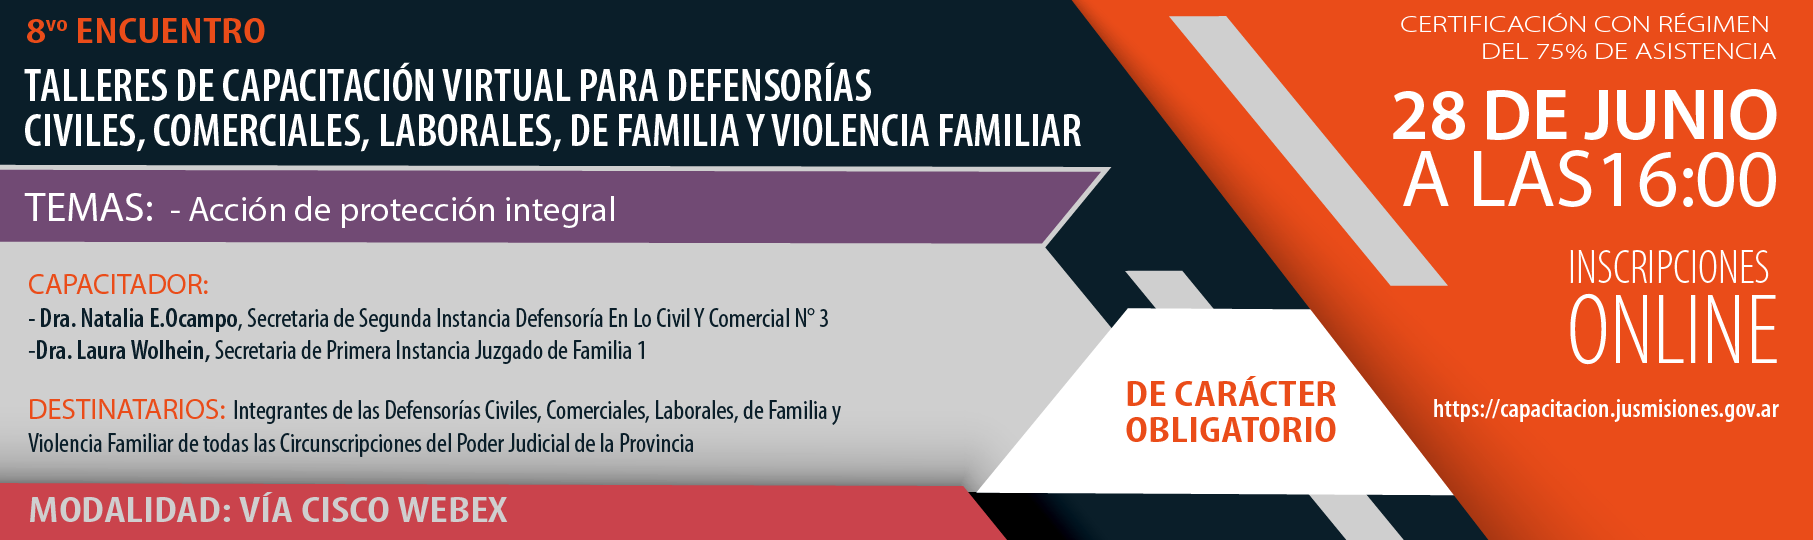 Talleres de Capacitación Virtual para Defensorías Civiles, Comerciales, Laborales, de Familia y Violencia Familiar